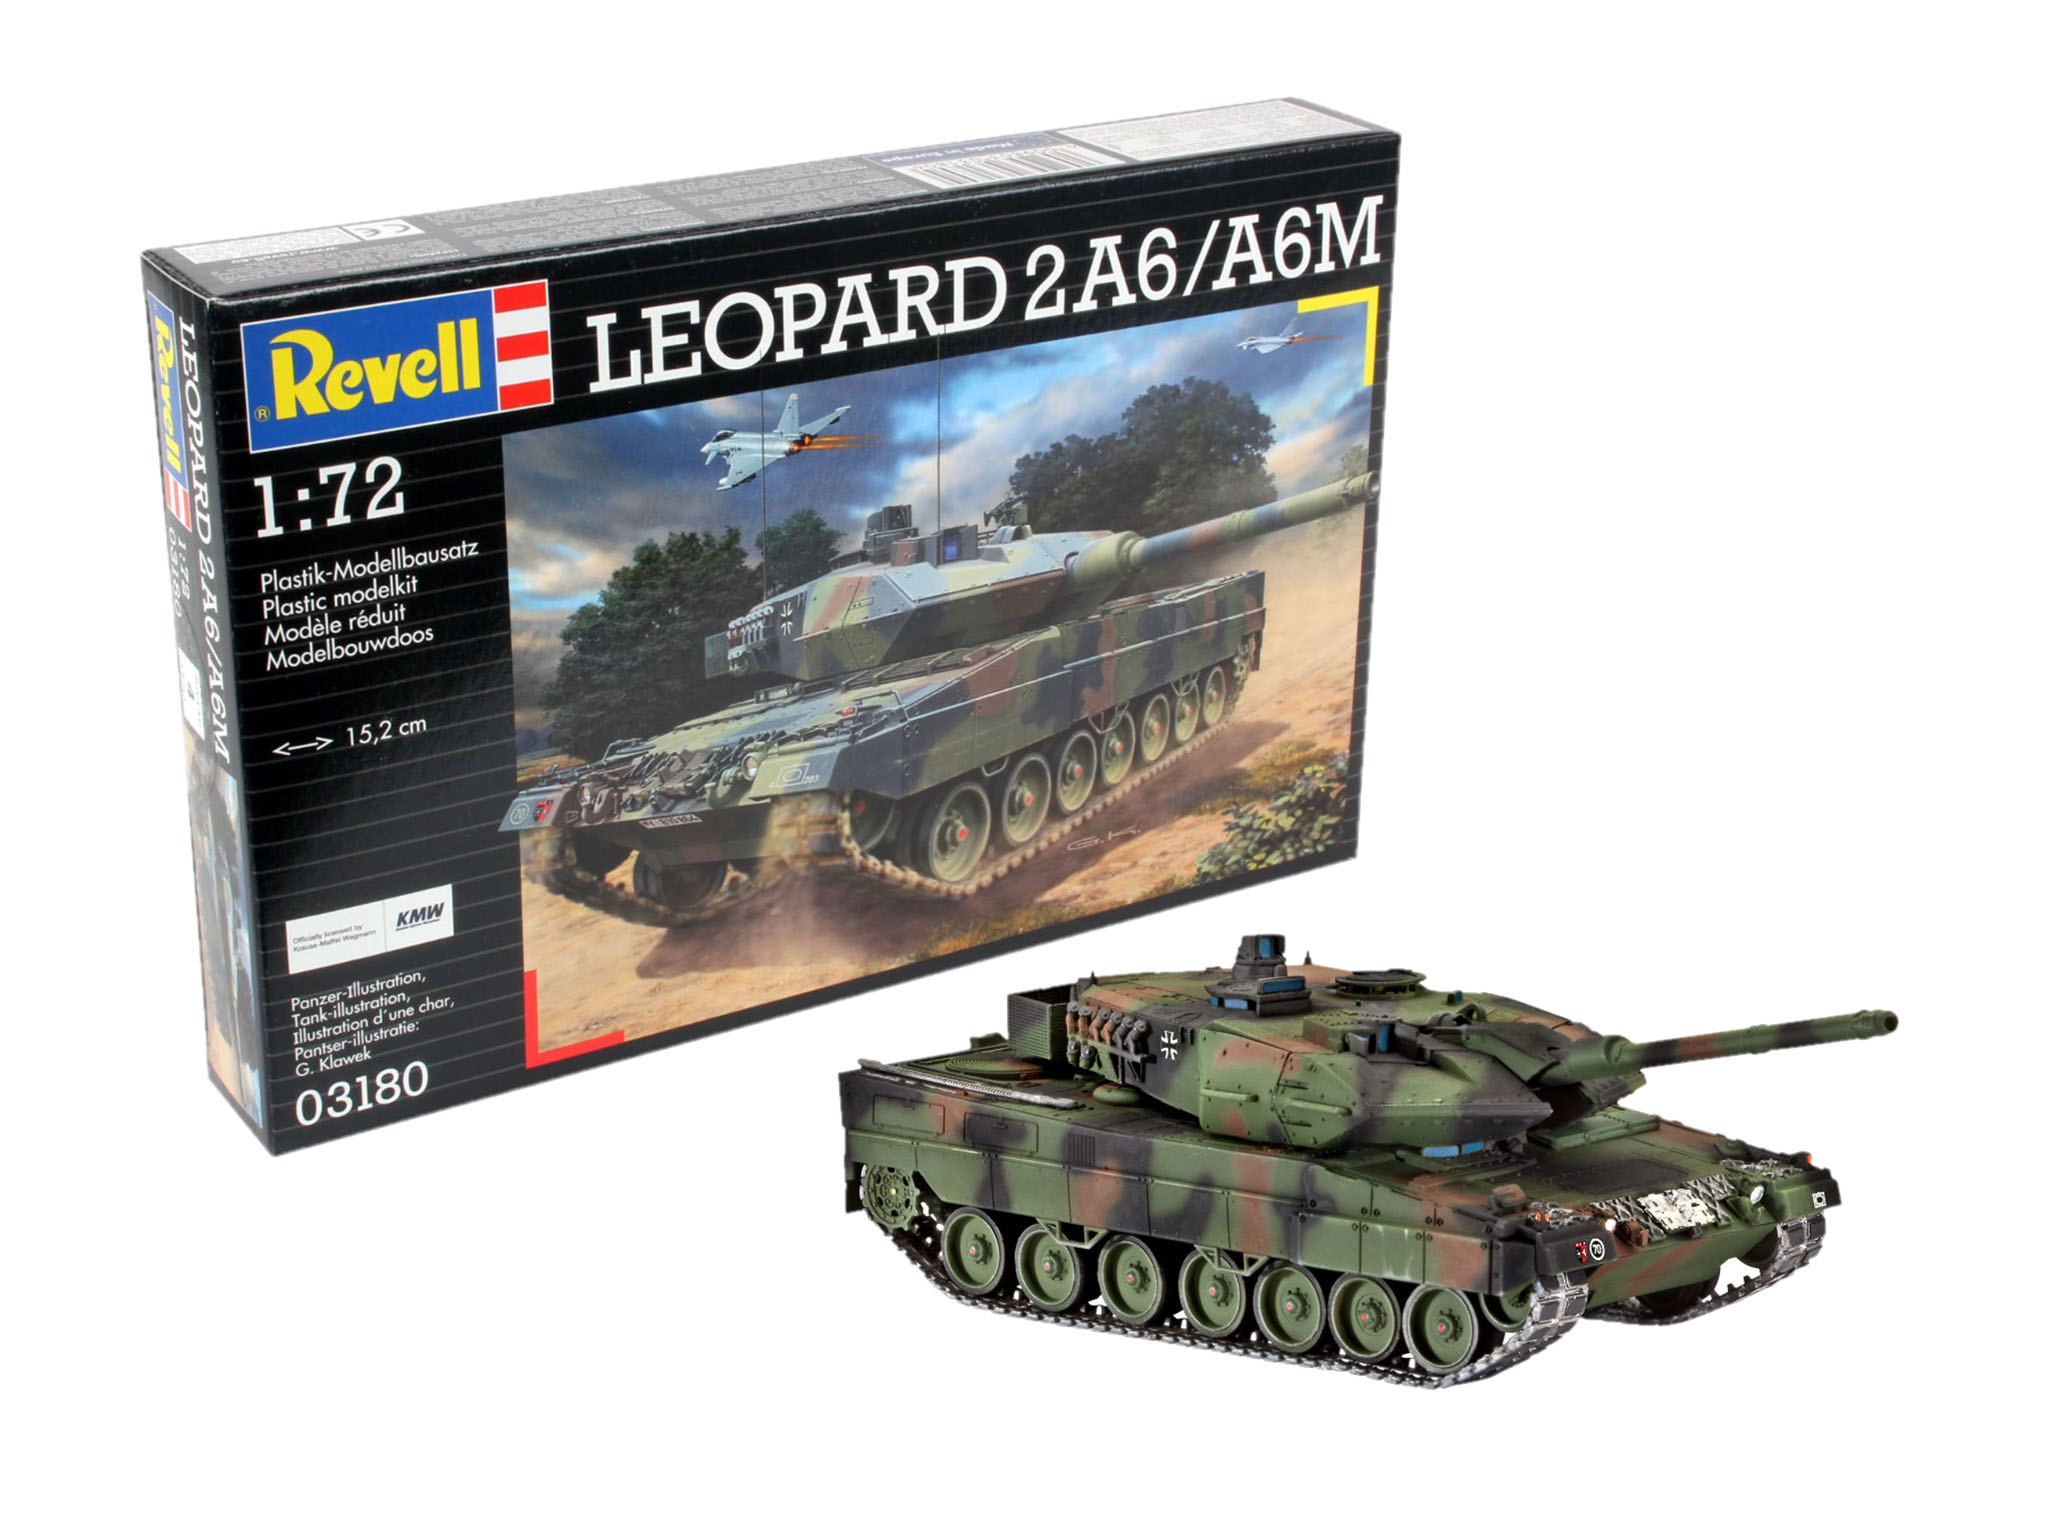 Revell 172 Leopard 2a6a6m Modeltreincenter Den Bosch